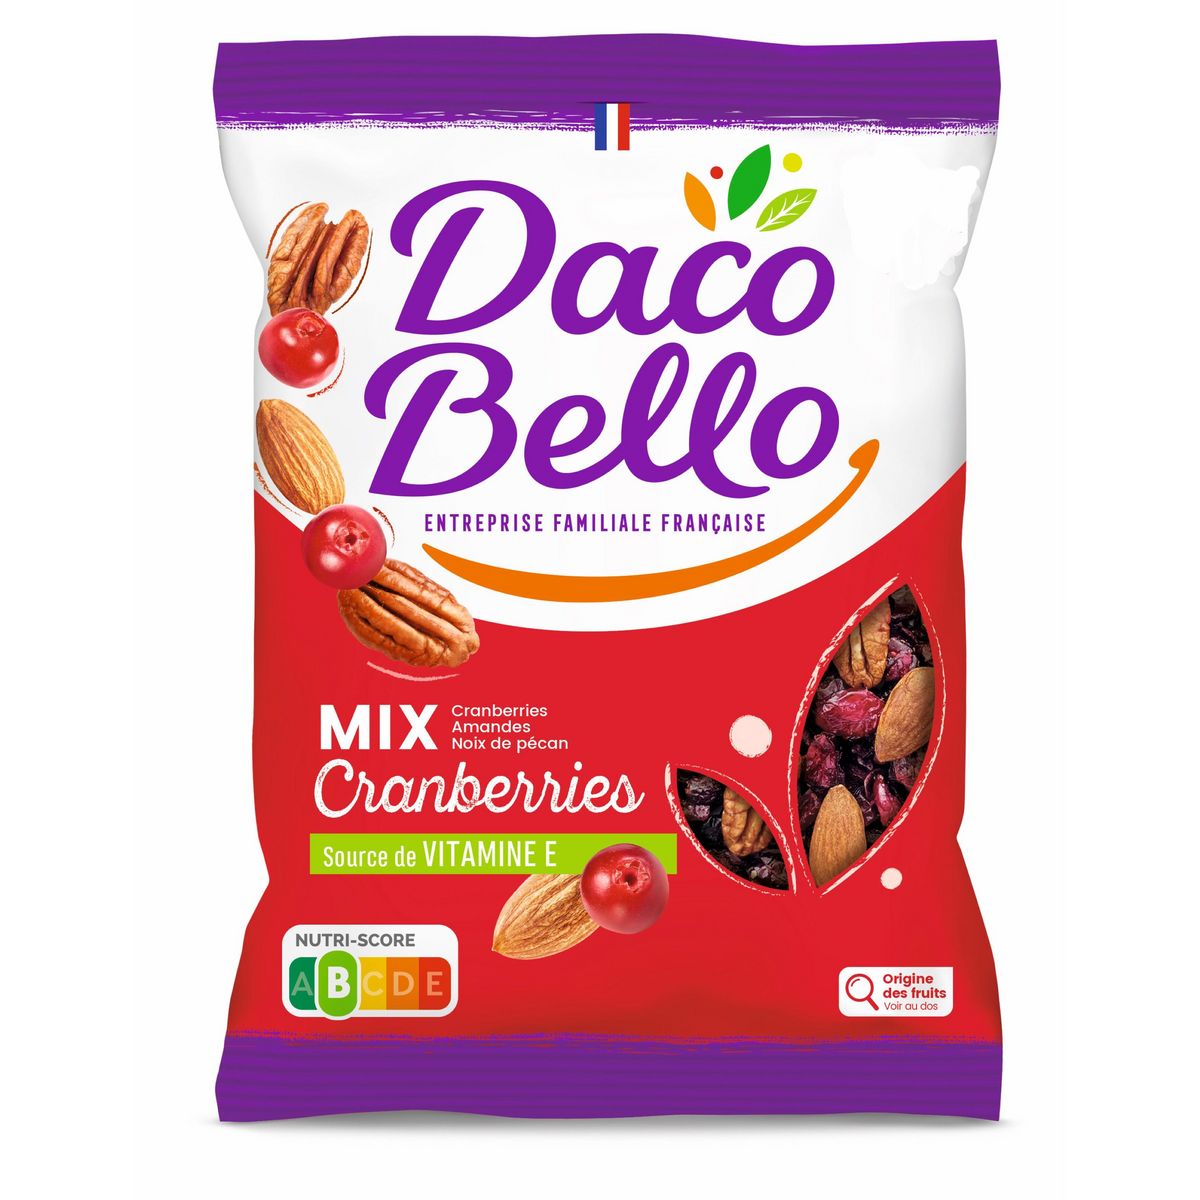 DACO BELLO Mix cranberries amandes et noix de pécan 350g